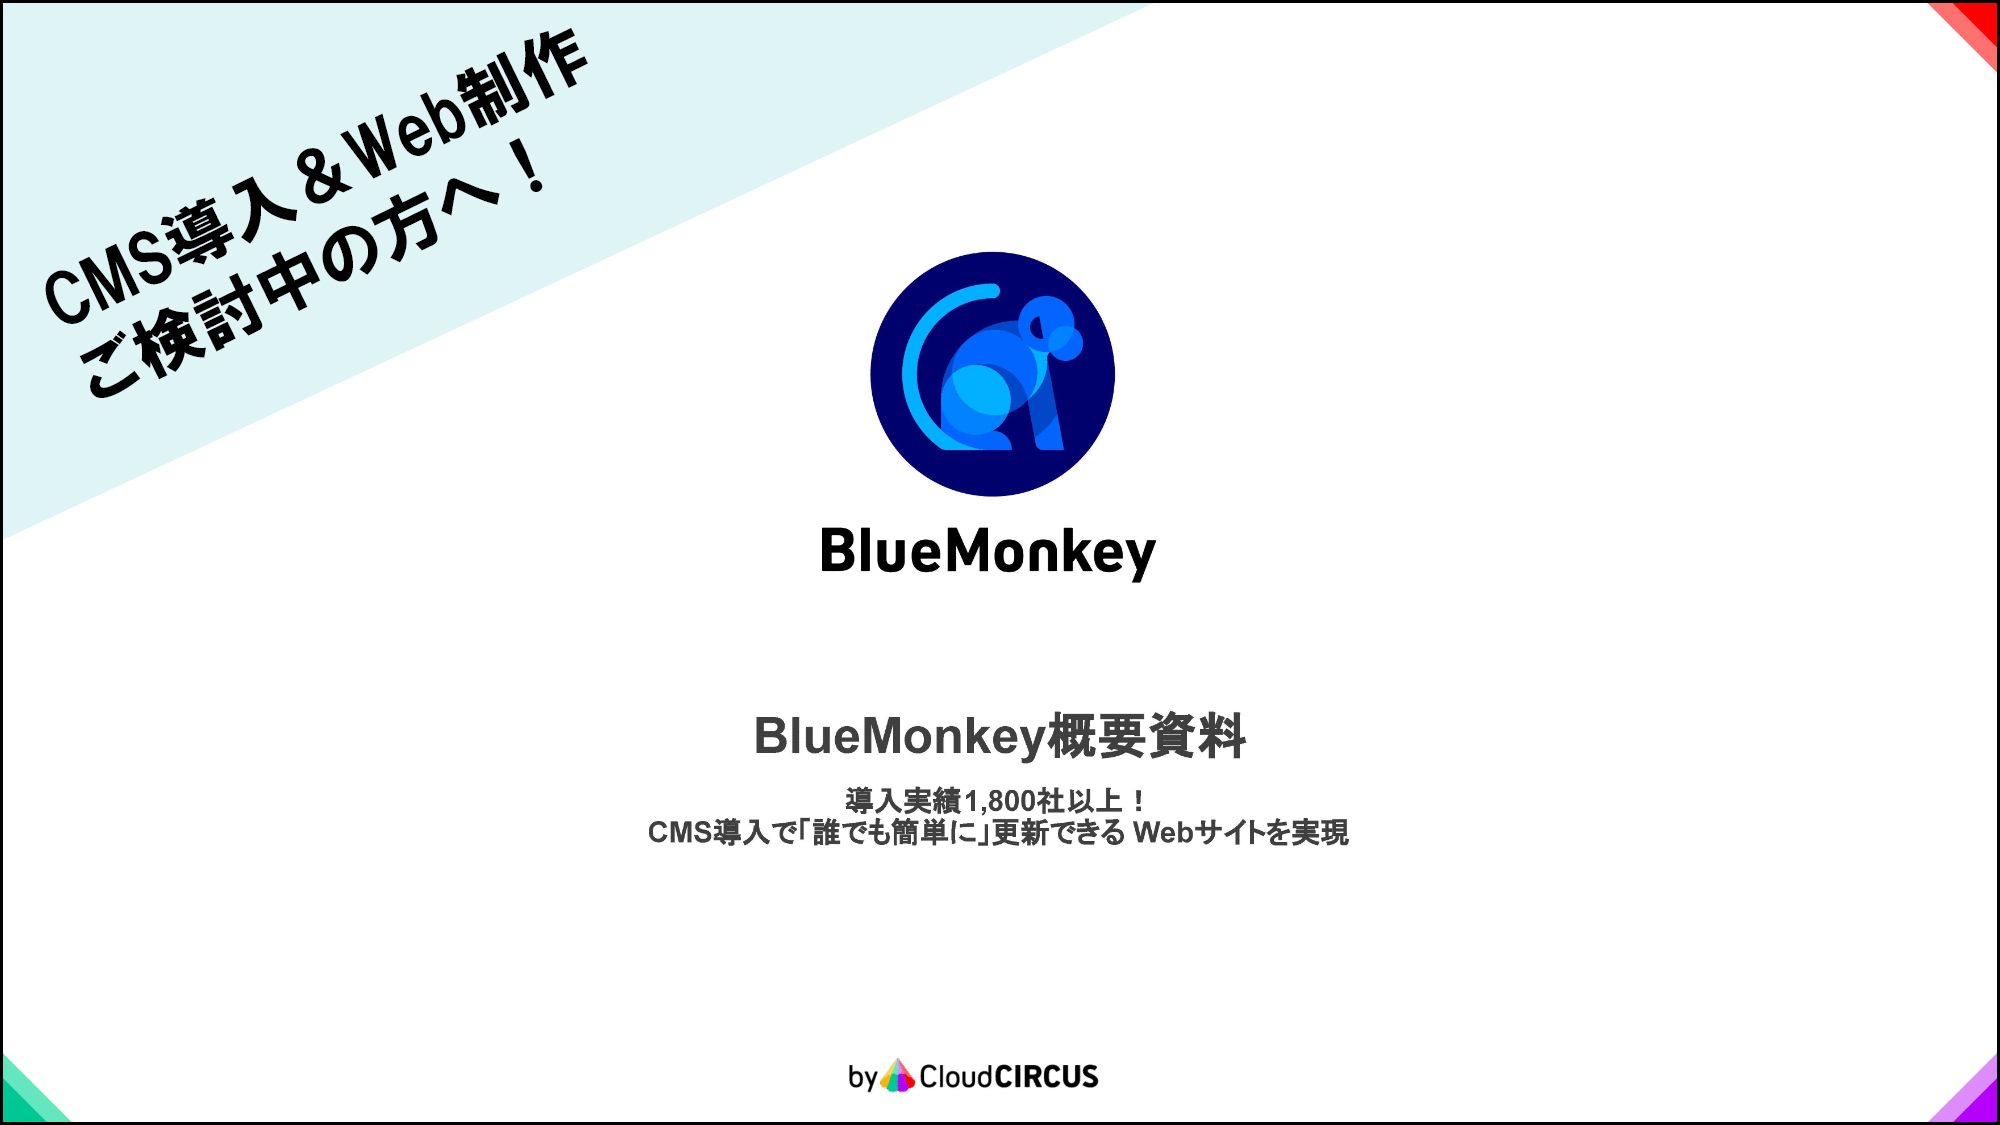 Blue Monkey 概要資料